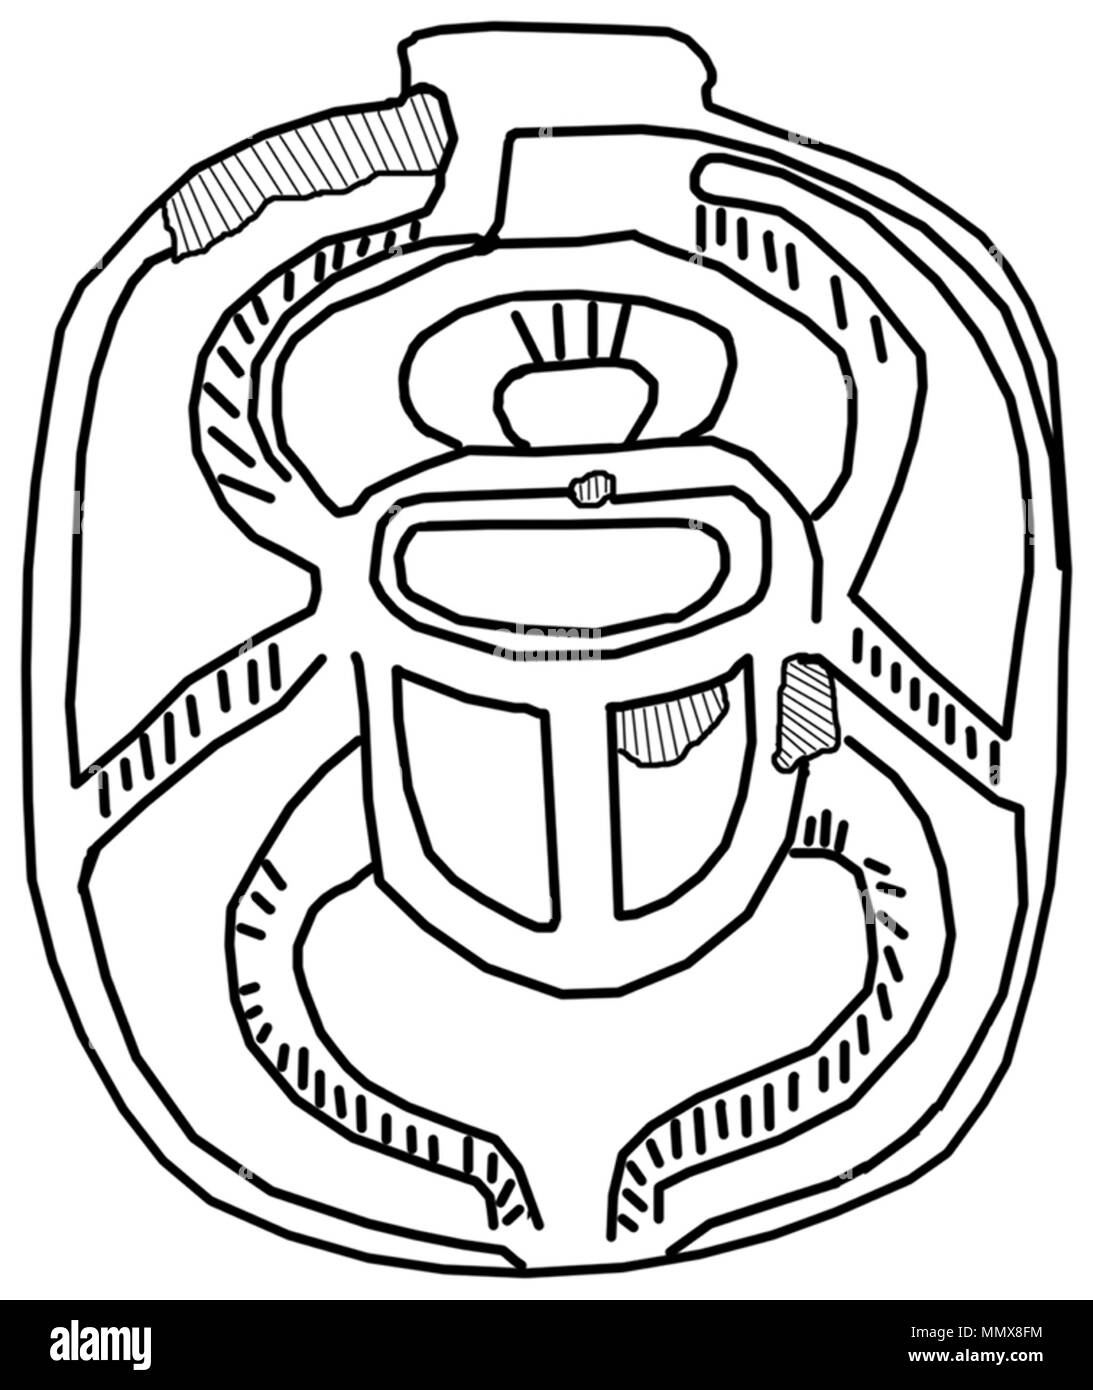 42.83 Anónimo (egipcio). "Escarabajo del corazón con difunto adorar a Osiris,' 1292-1186 A.C. de esteatita, infill bajos posiblemente estaba cubierto de IRSA pigmento. Museo de Arte Walters (42.83): adquirido por Henry Walters, 1930. - Corazón egipcio con difunto Escarabajo adorar a Osiris - Walters 4283 - la impresión Foto de stock